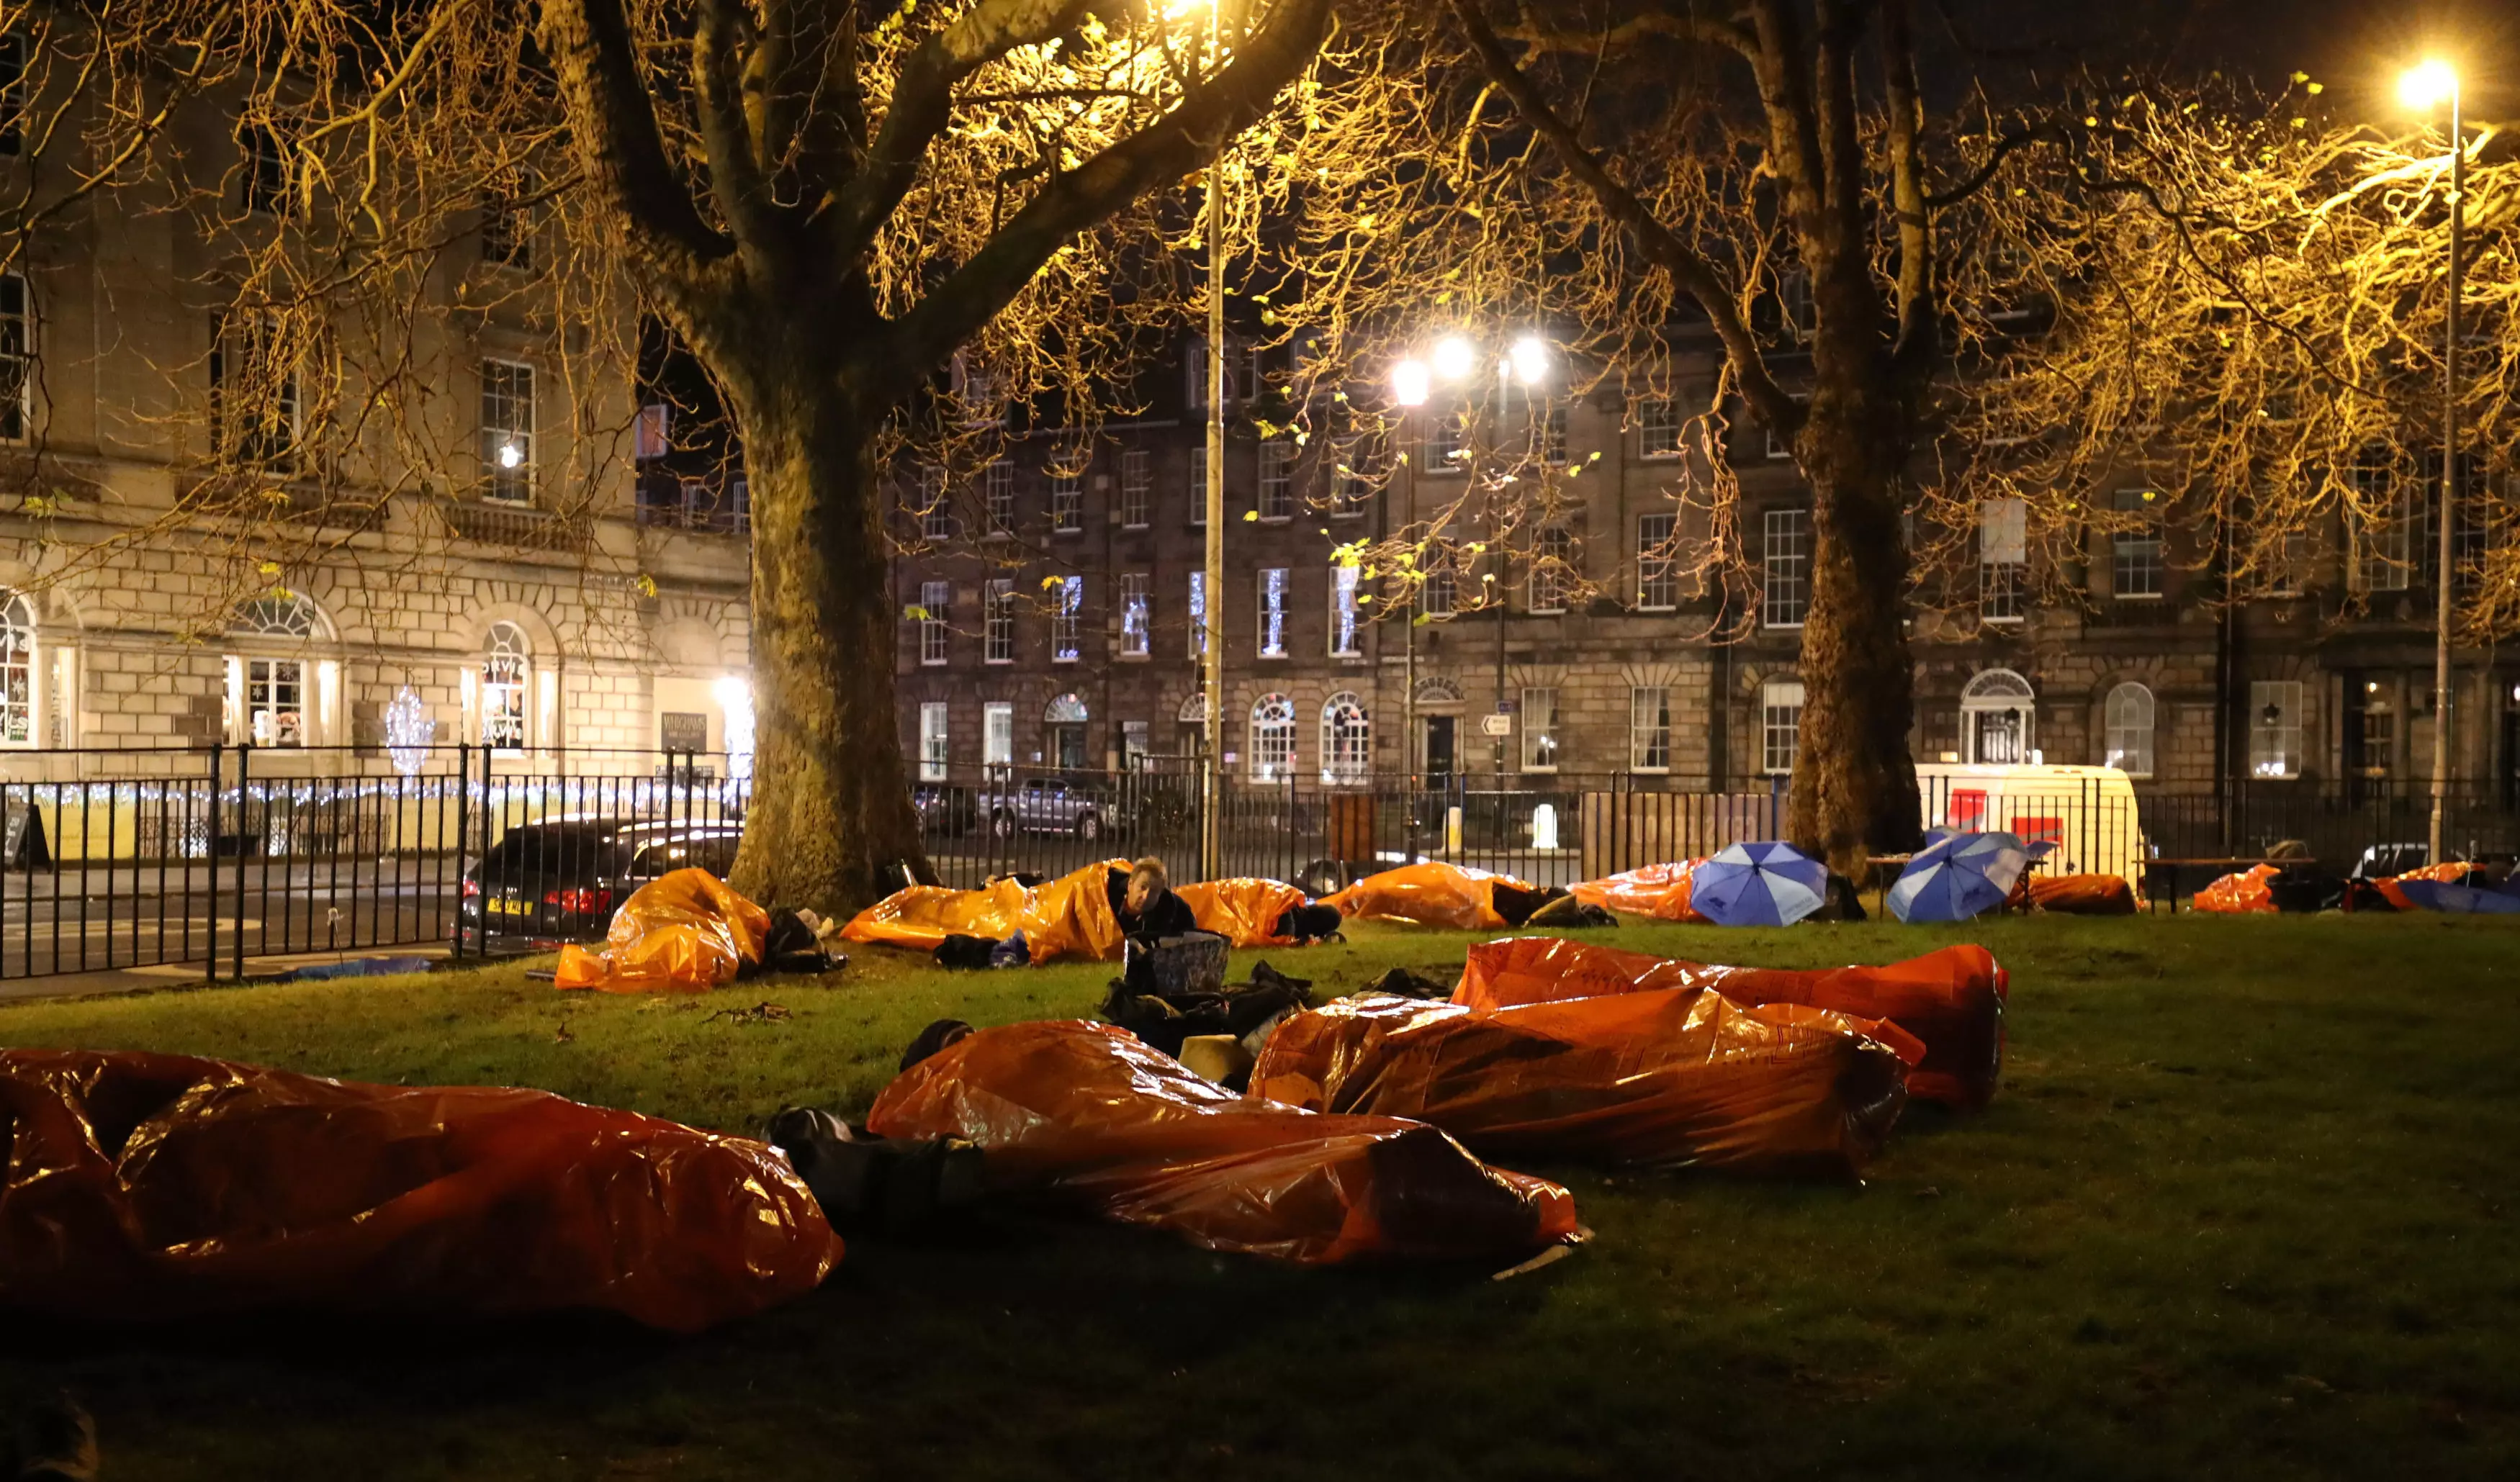 I Slept Outside To Raise Funds For A Homeless Village in Edinburgh